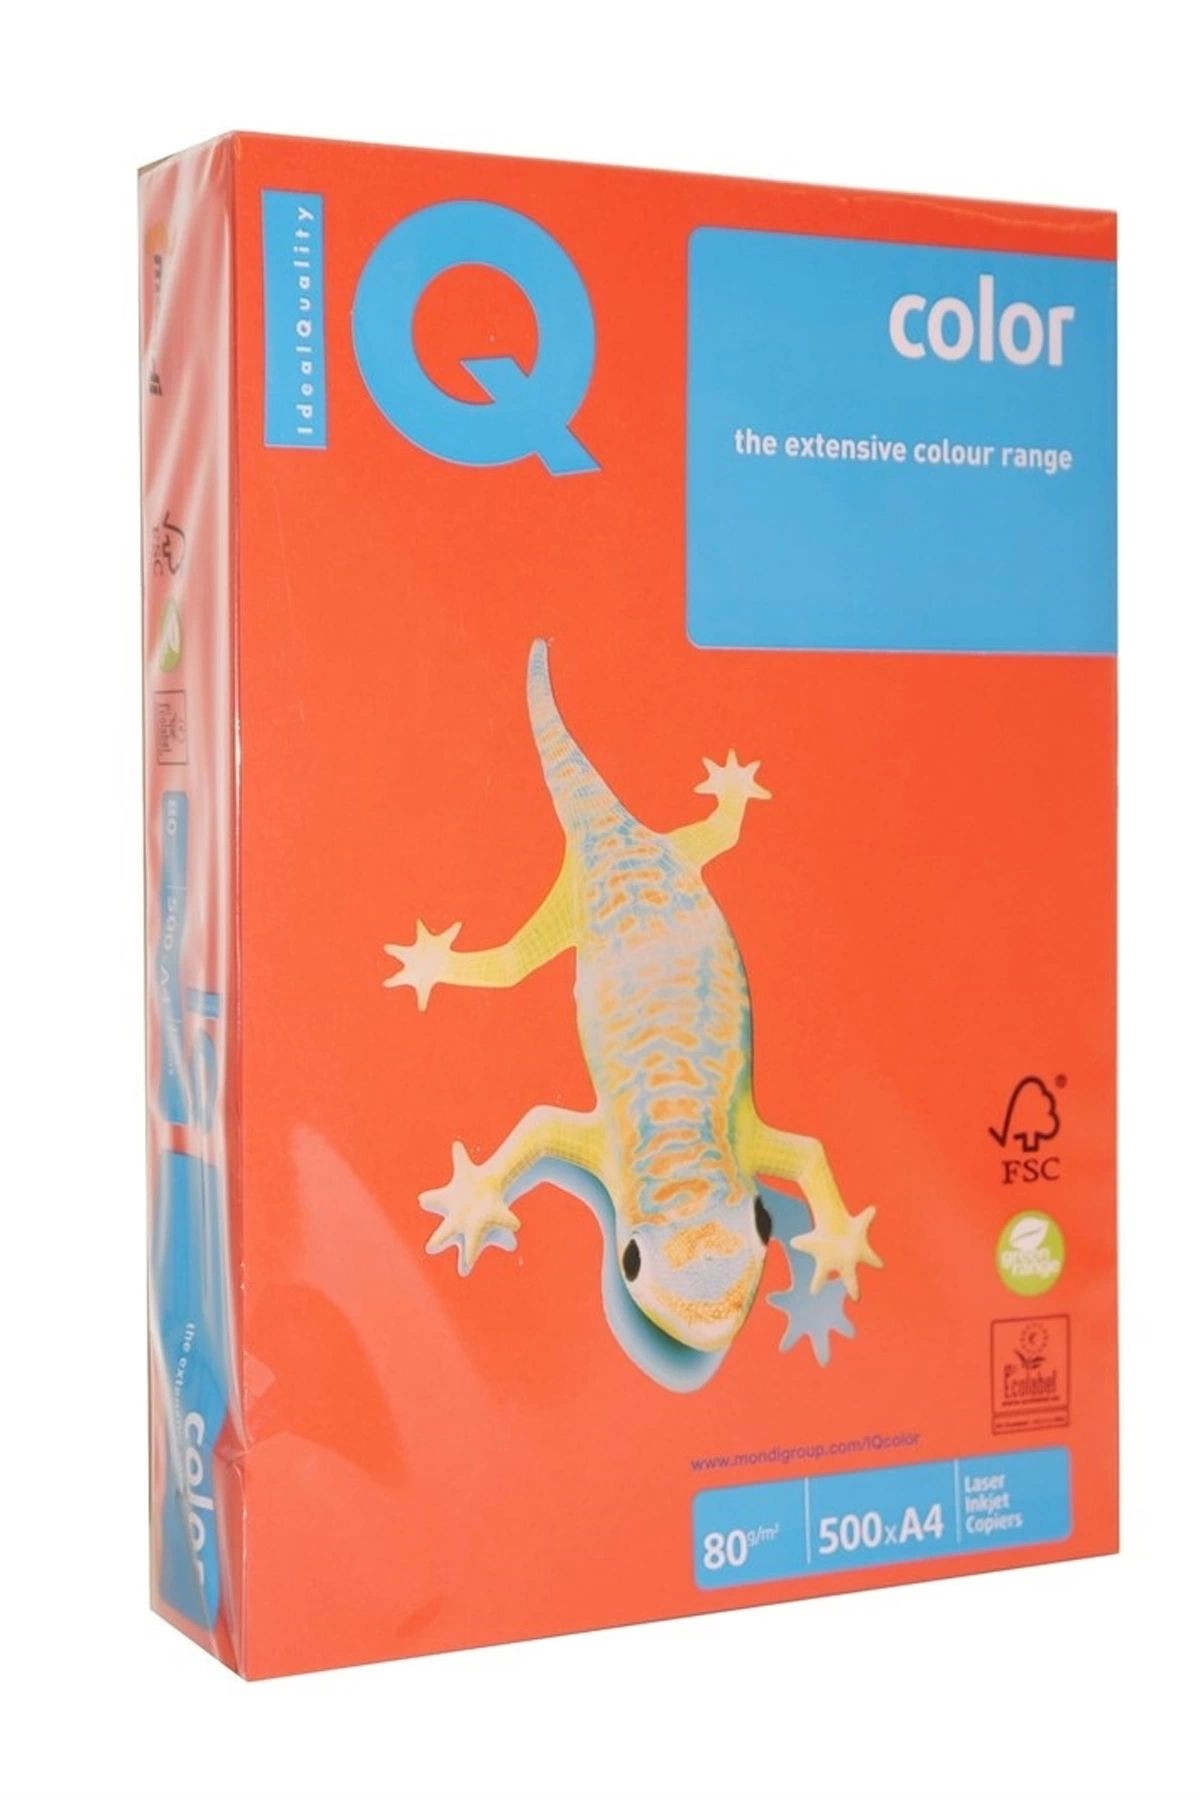 Genel Markalar Iq Color Renkli Fotokopi Kağıdı A4 80 gram 500 Yaprak Koral Kırmızı Yoğun